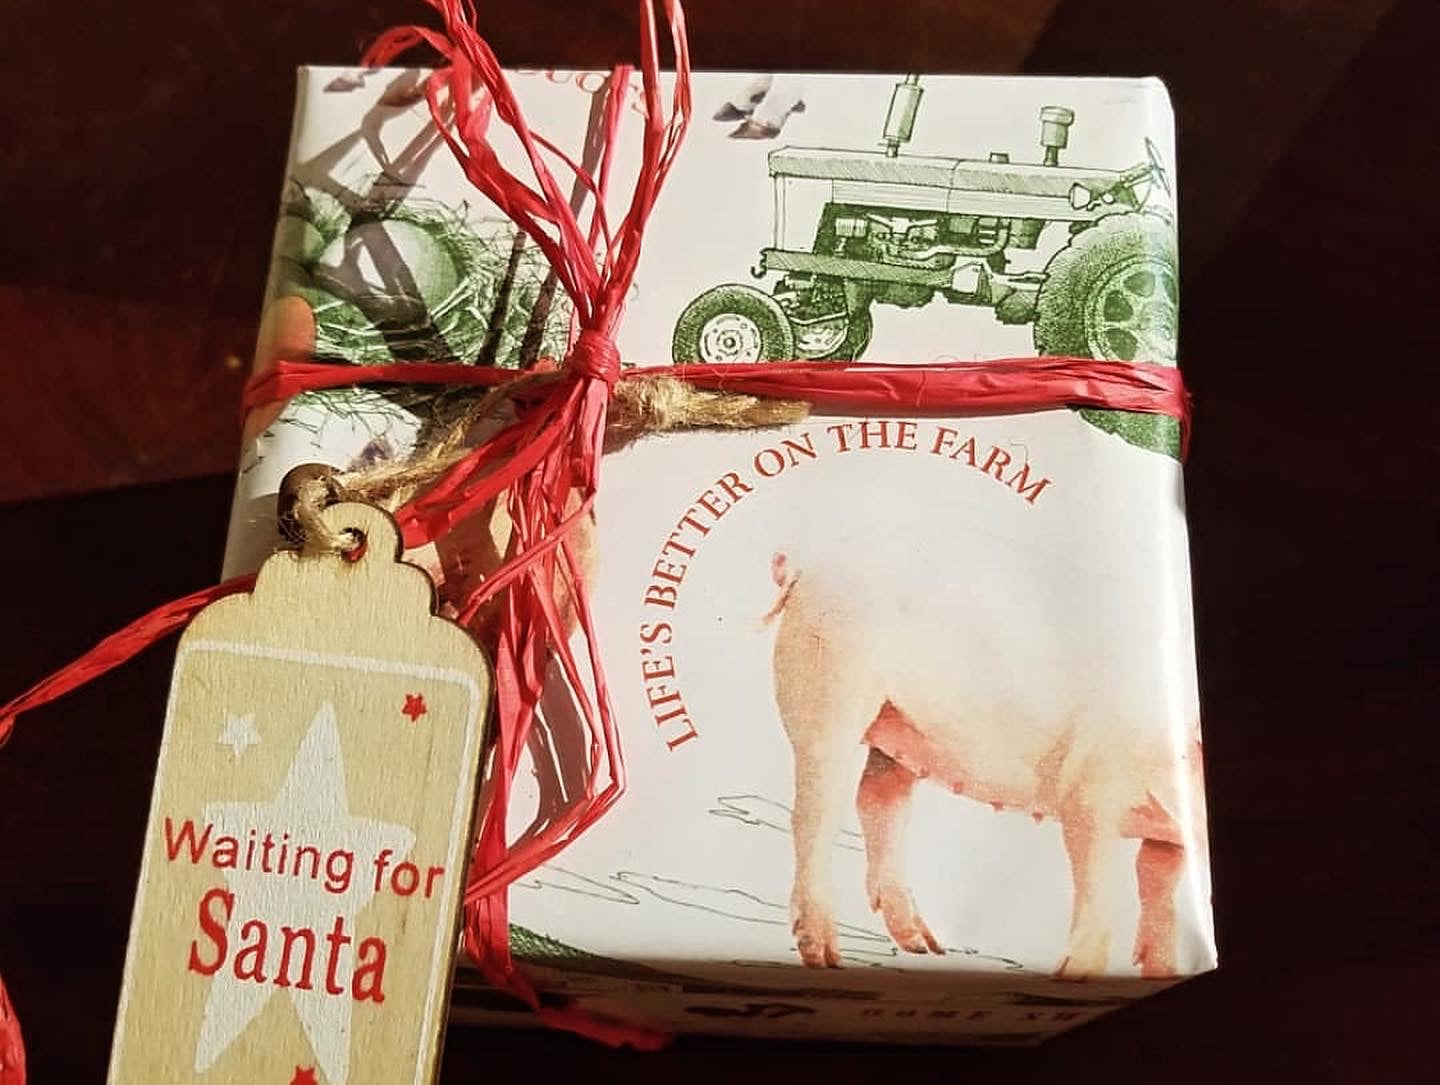 Custom 4 Jam Gift Set Wrapped